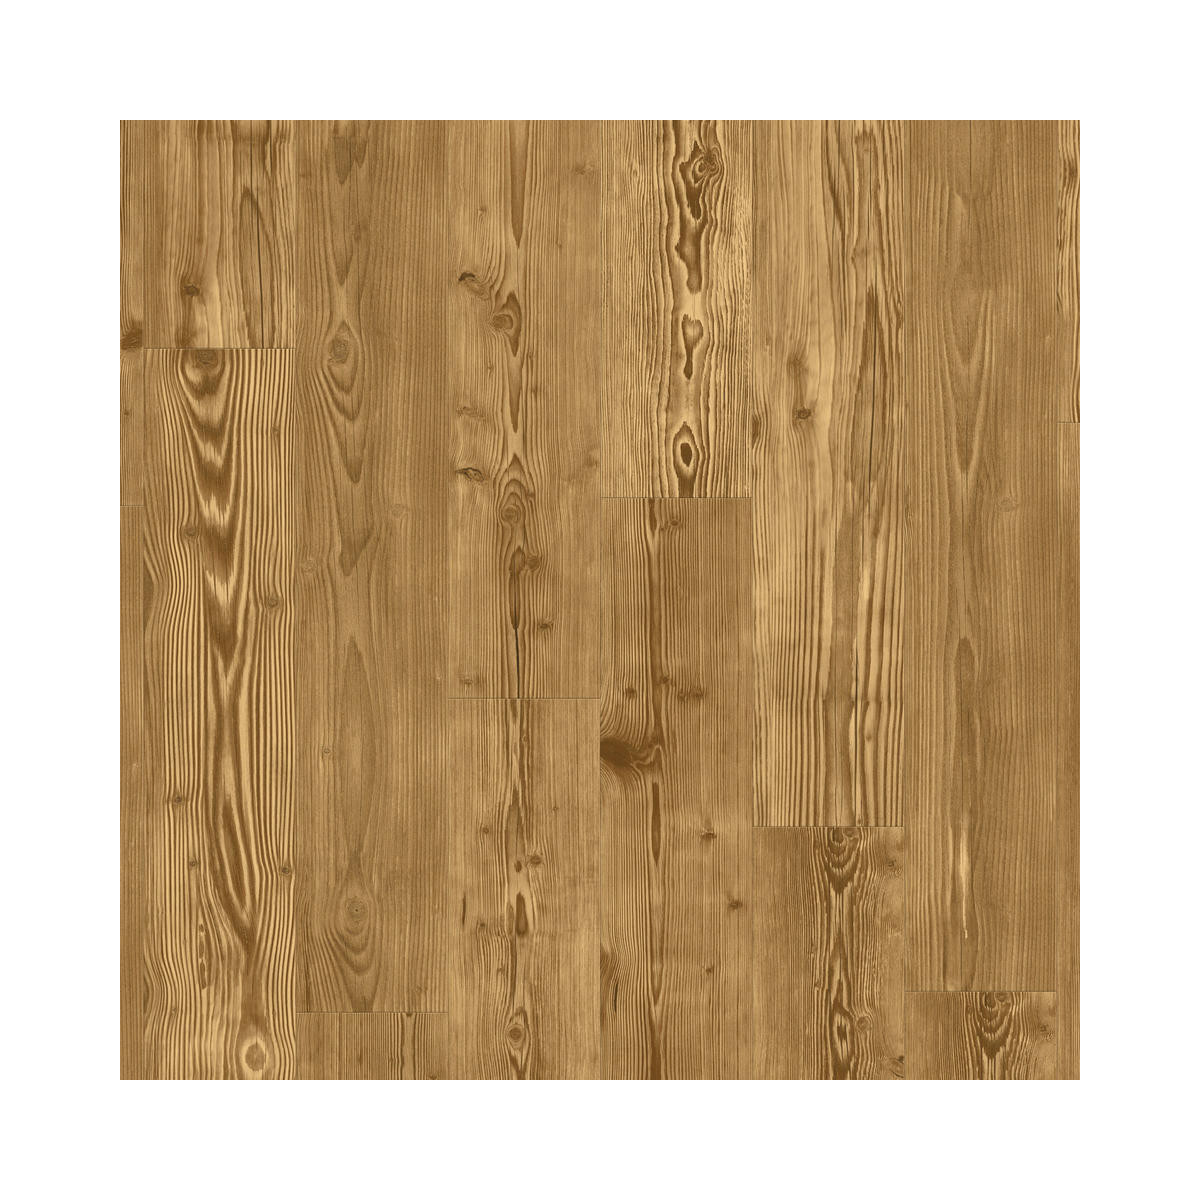 Vinylová podlaha lepená iD Inspiration 30 Classic Pine Sunburned - borovice